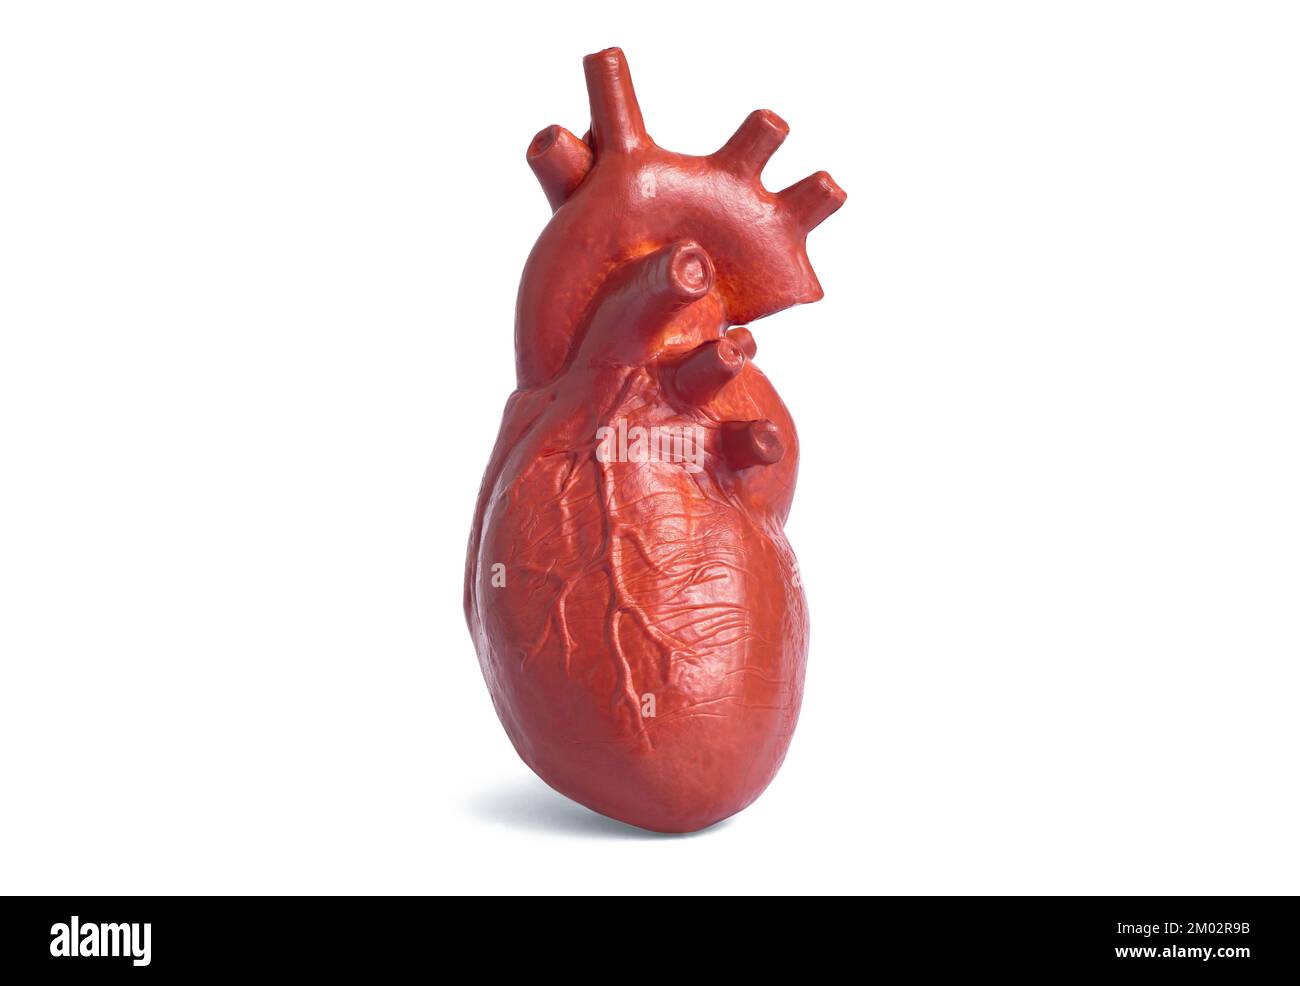 Copia anatomica in miniatura di un cuore umano isolato su sfondo bianco. Insegnamento con modelli anatomici di organi interni. Foto Stock